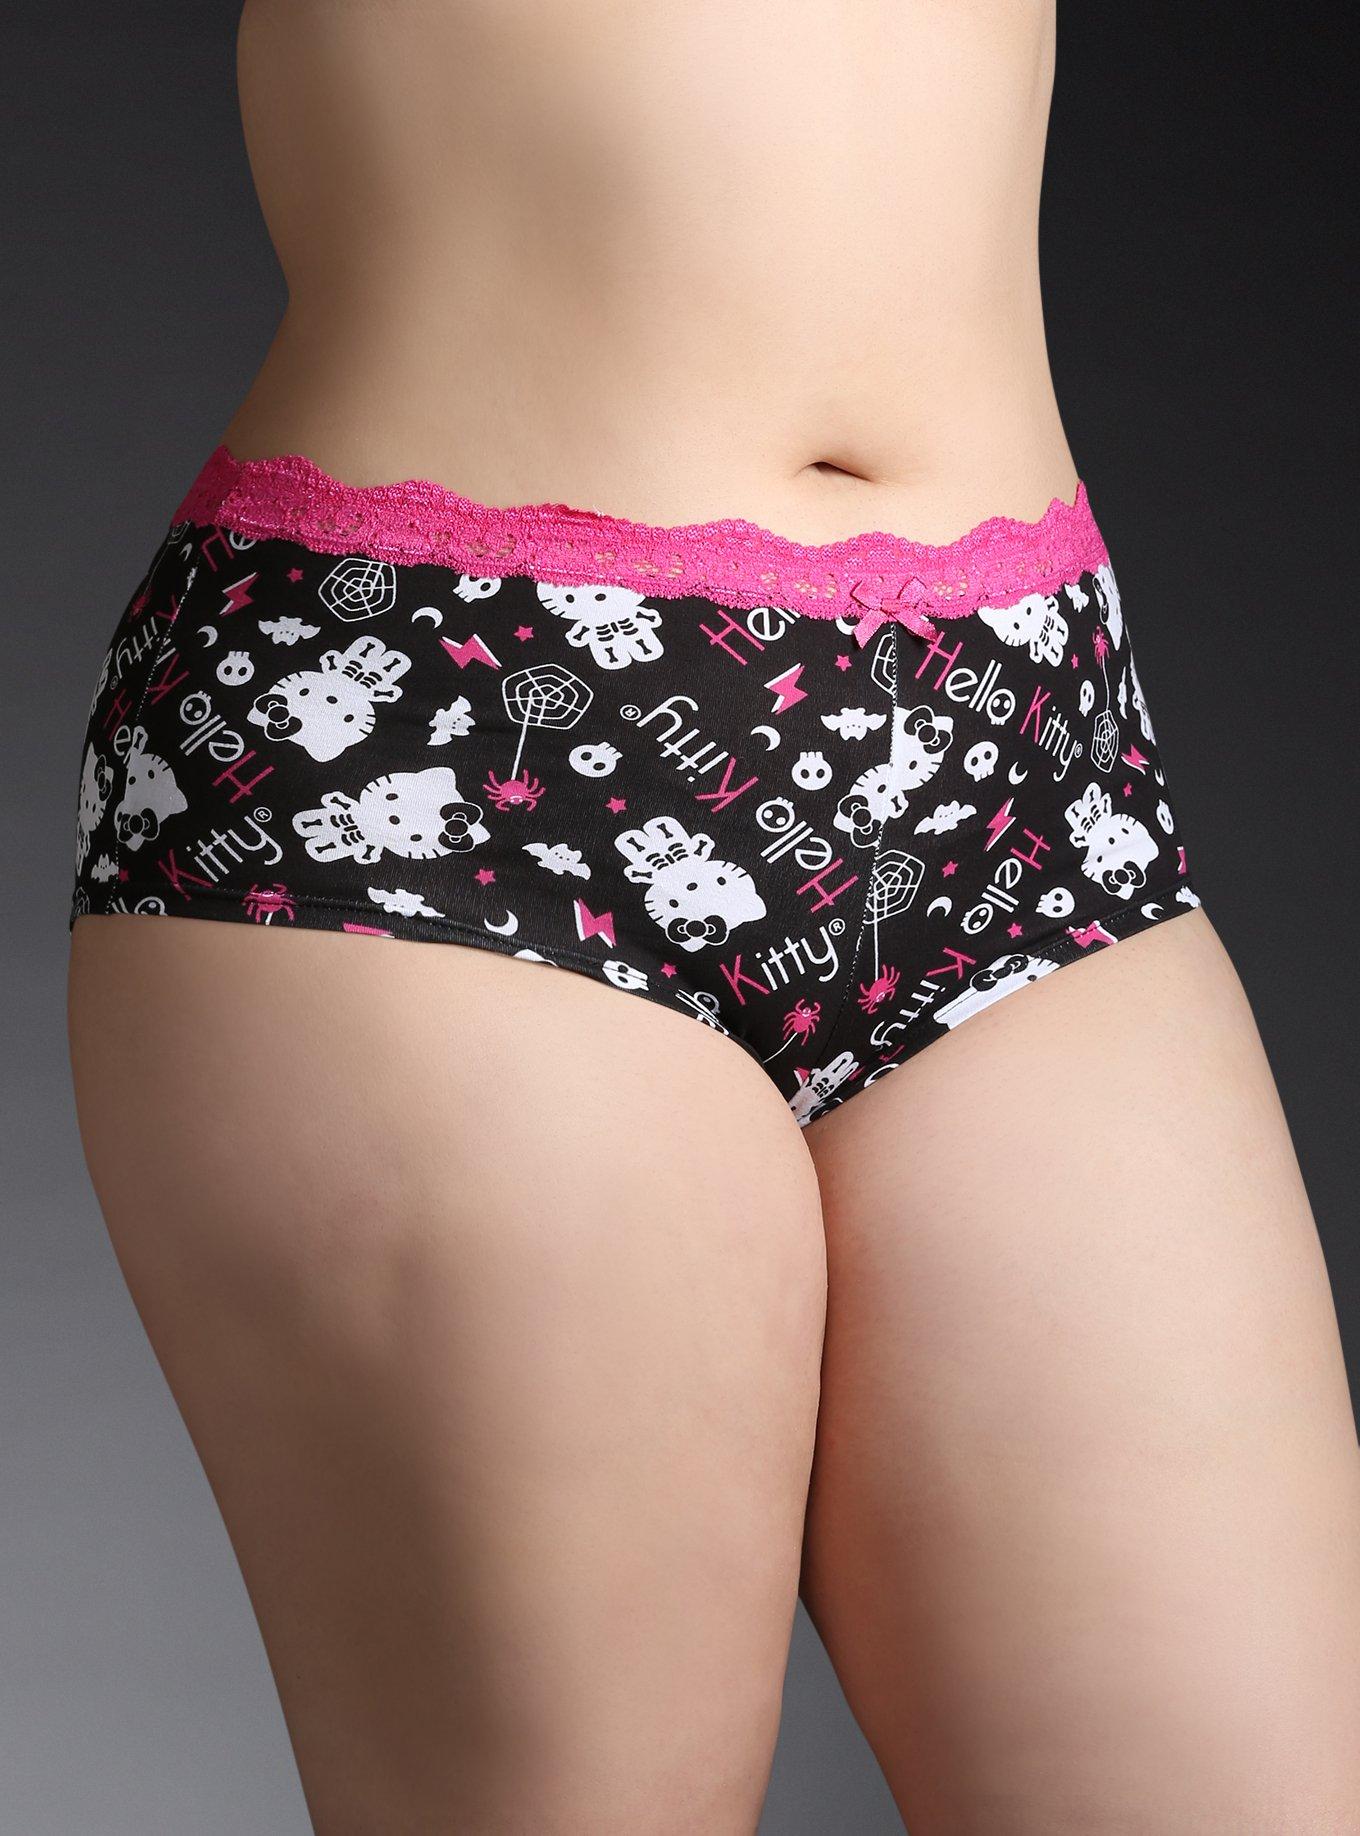 DeanFire High Waist Women Plus Size Underwear Panties Halloween